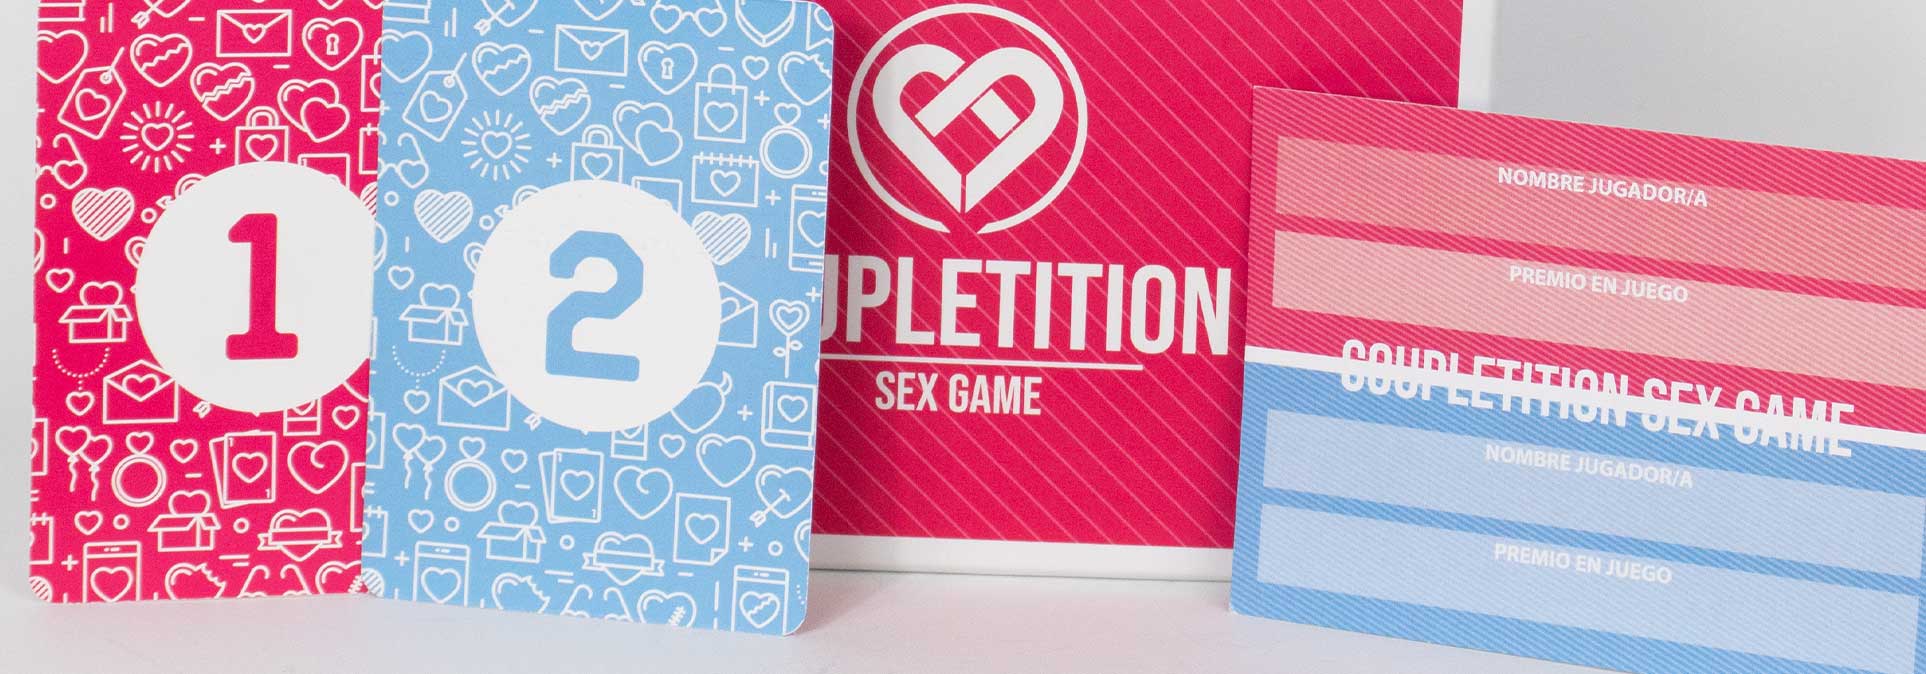 8 juegos sexuales para hacer con tu pareja y disfrutar al máximo este San  Valentín - Sport